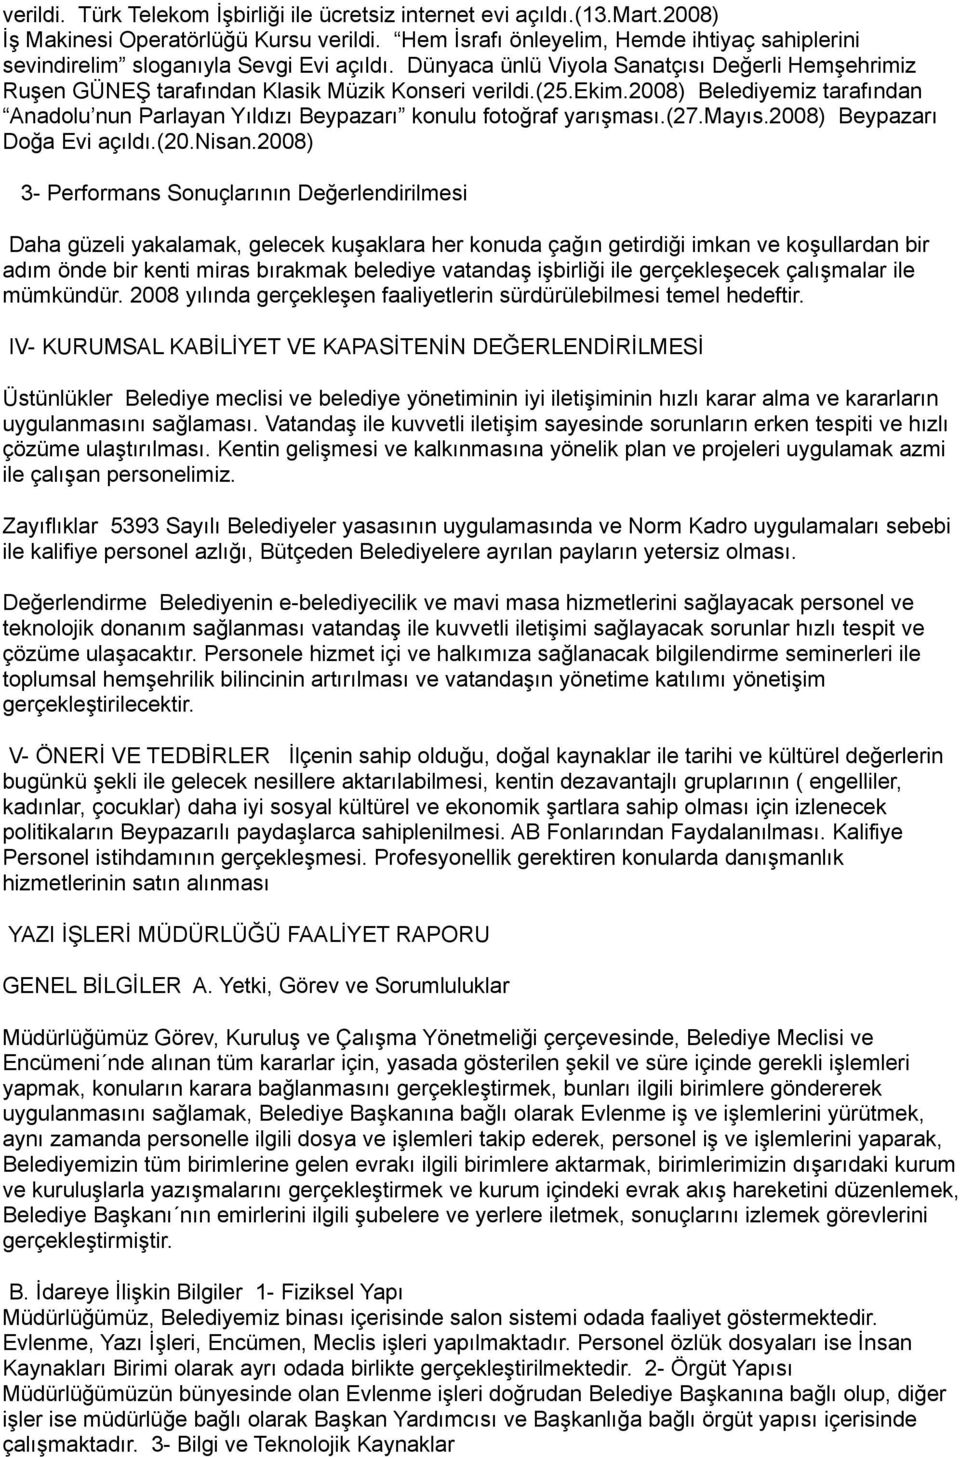 ekim.2008) Belediyemiz tarafından Anadolu nun Parlayan Yıldızı Beypazarı konulu fotoğraf yarışması.(27.mayıs.2008) Beypazarı Doğa Evi açıldı.(20.nisan.